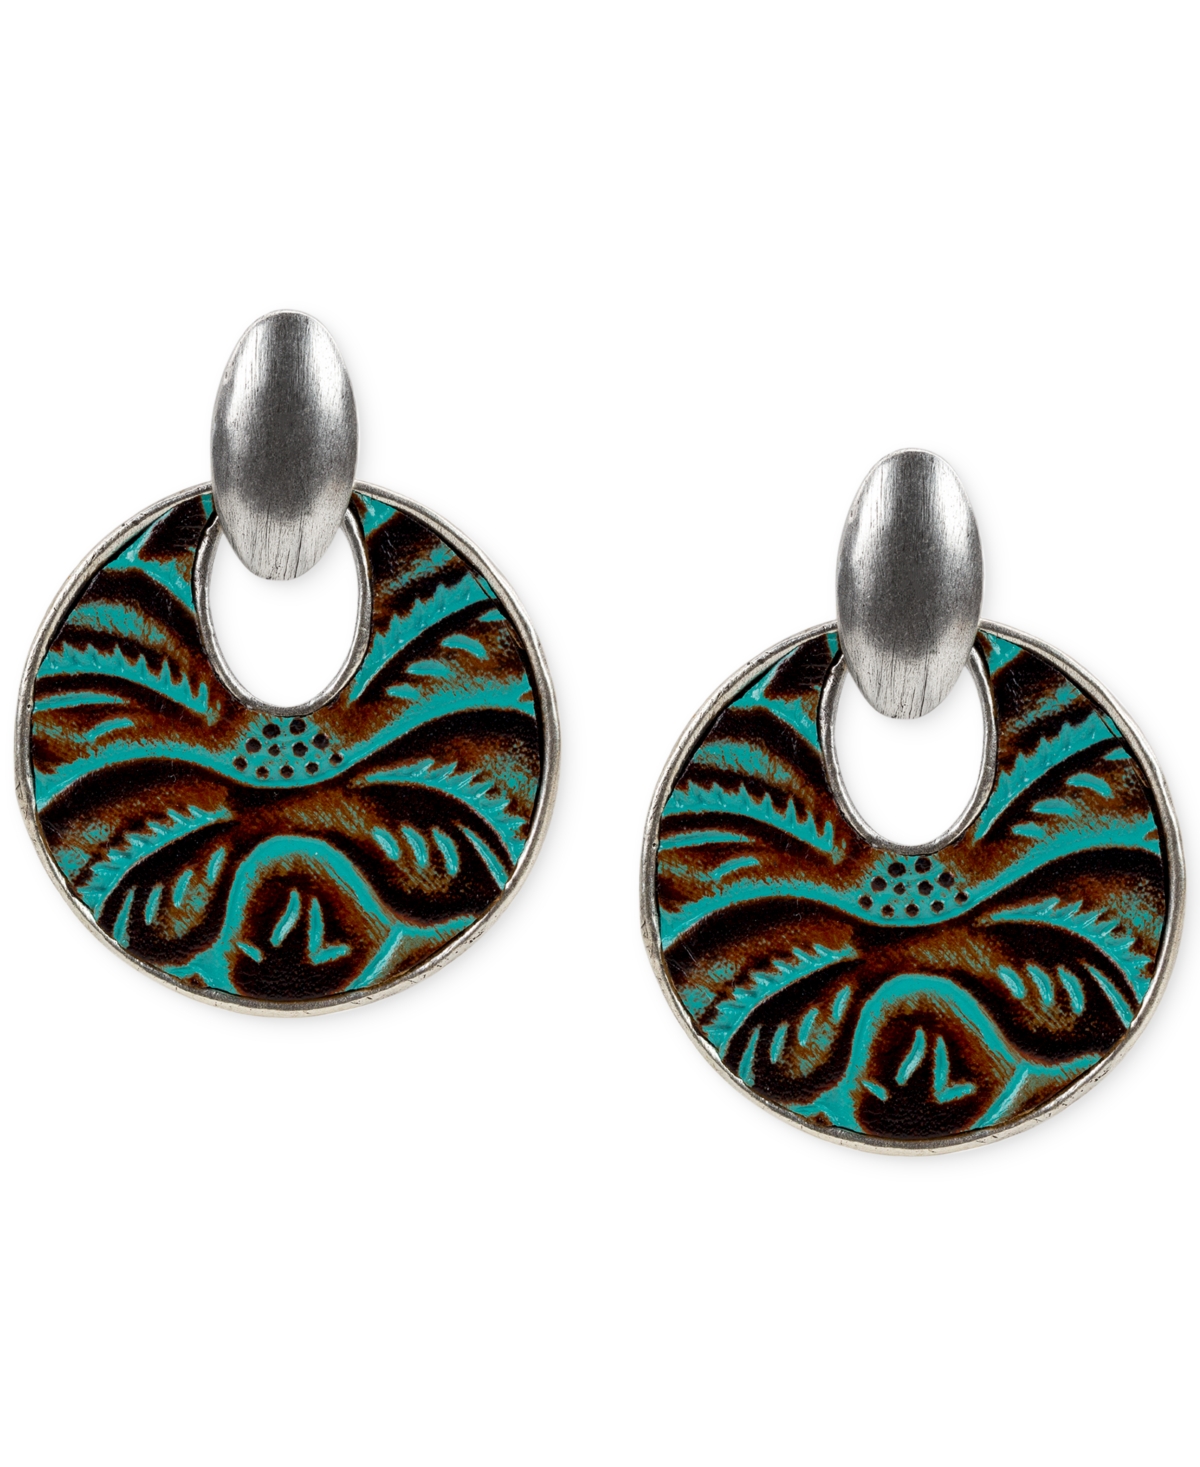 Leather Doorknocker Earrings - Turquoise